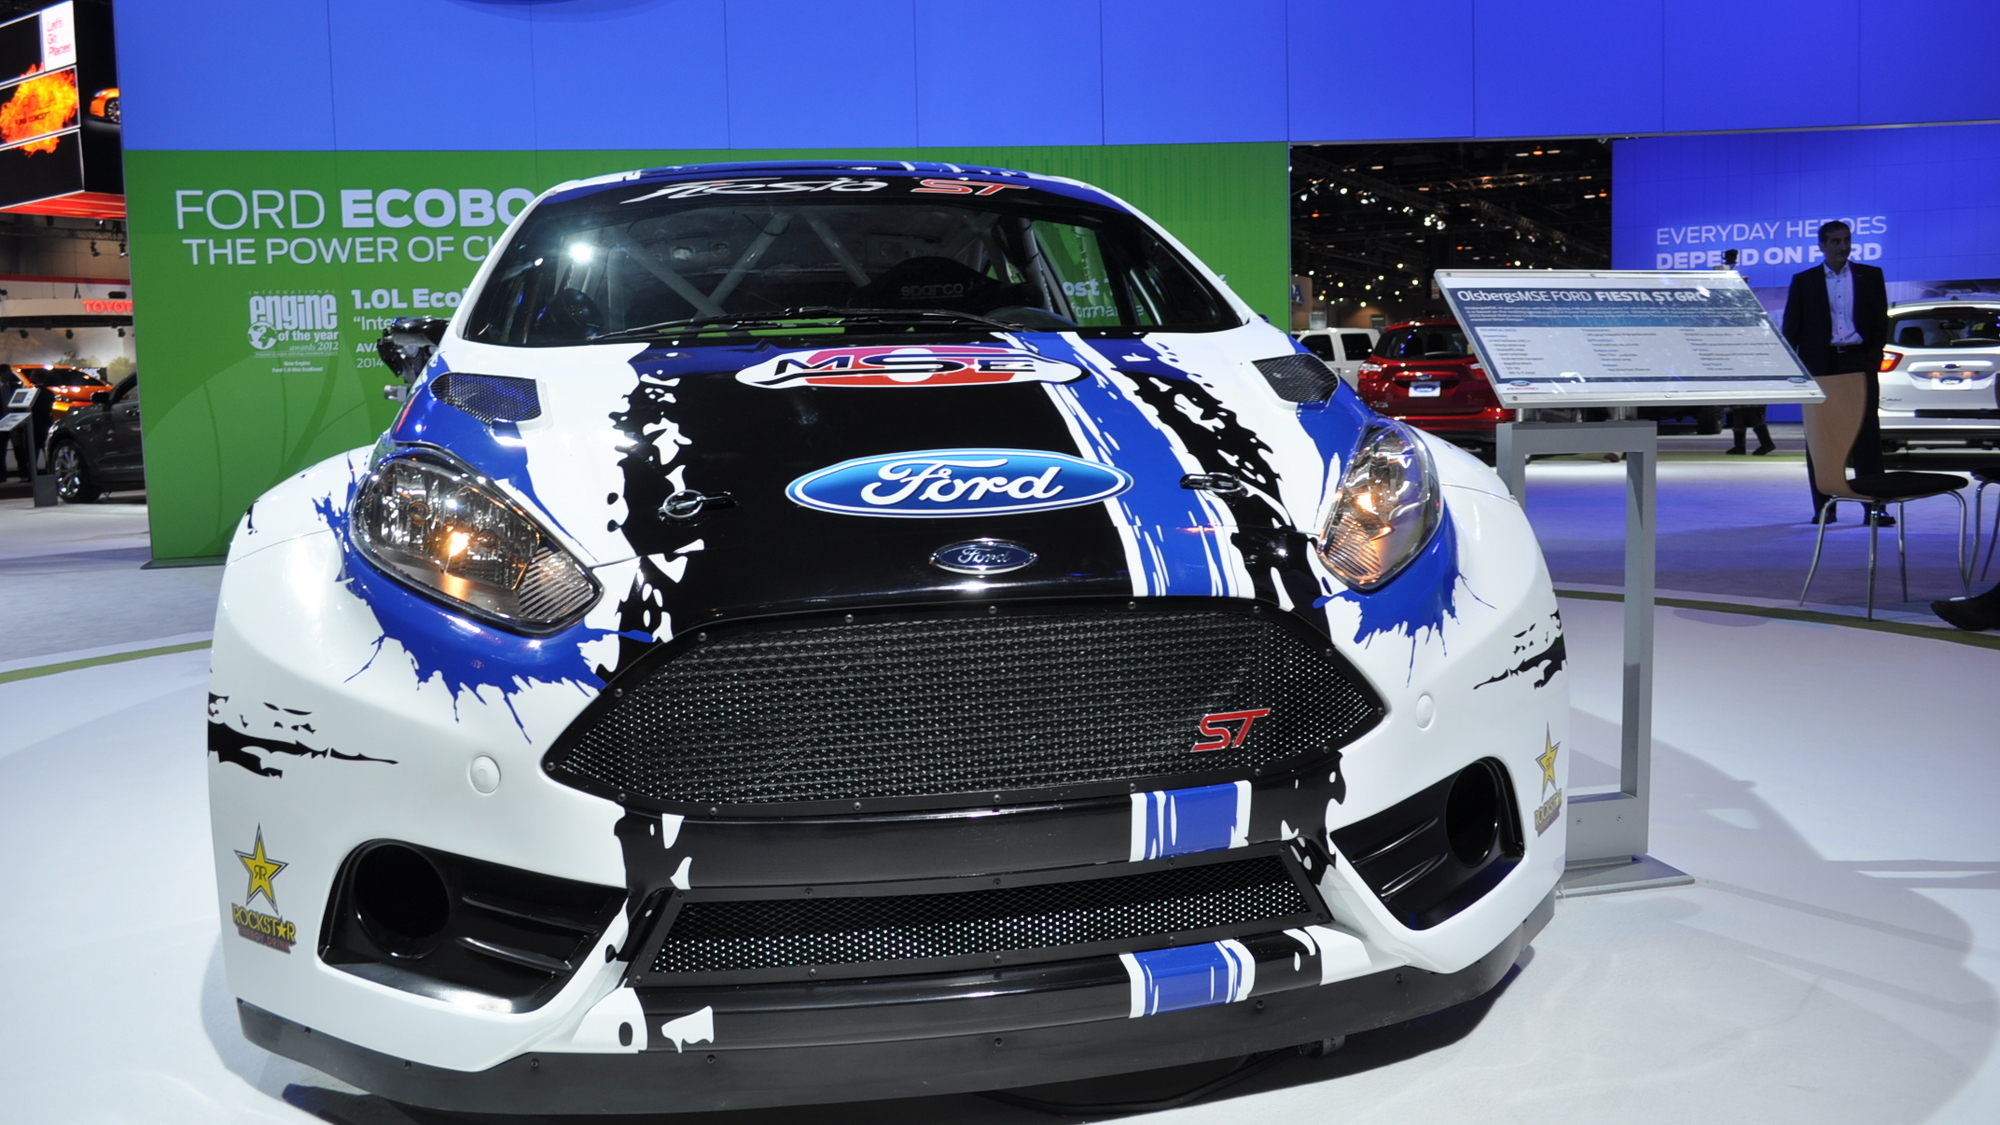 2013 Ford Fiesta ST Global RallyCross race car live shots